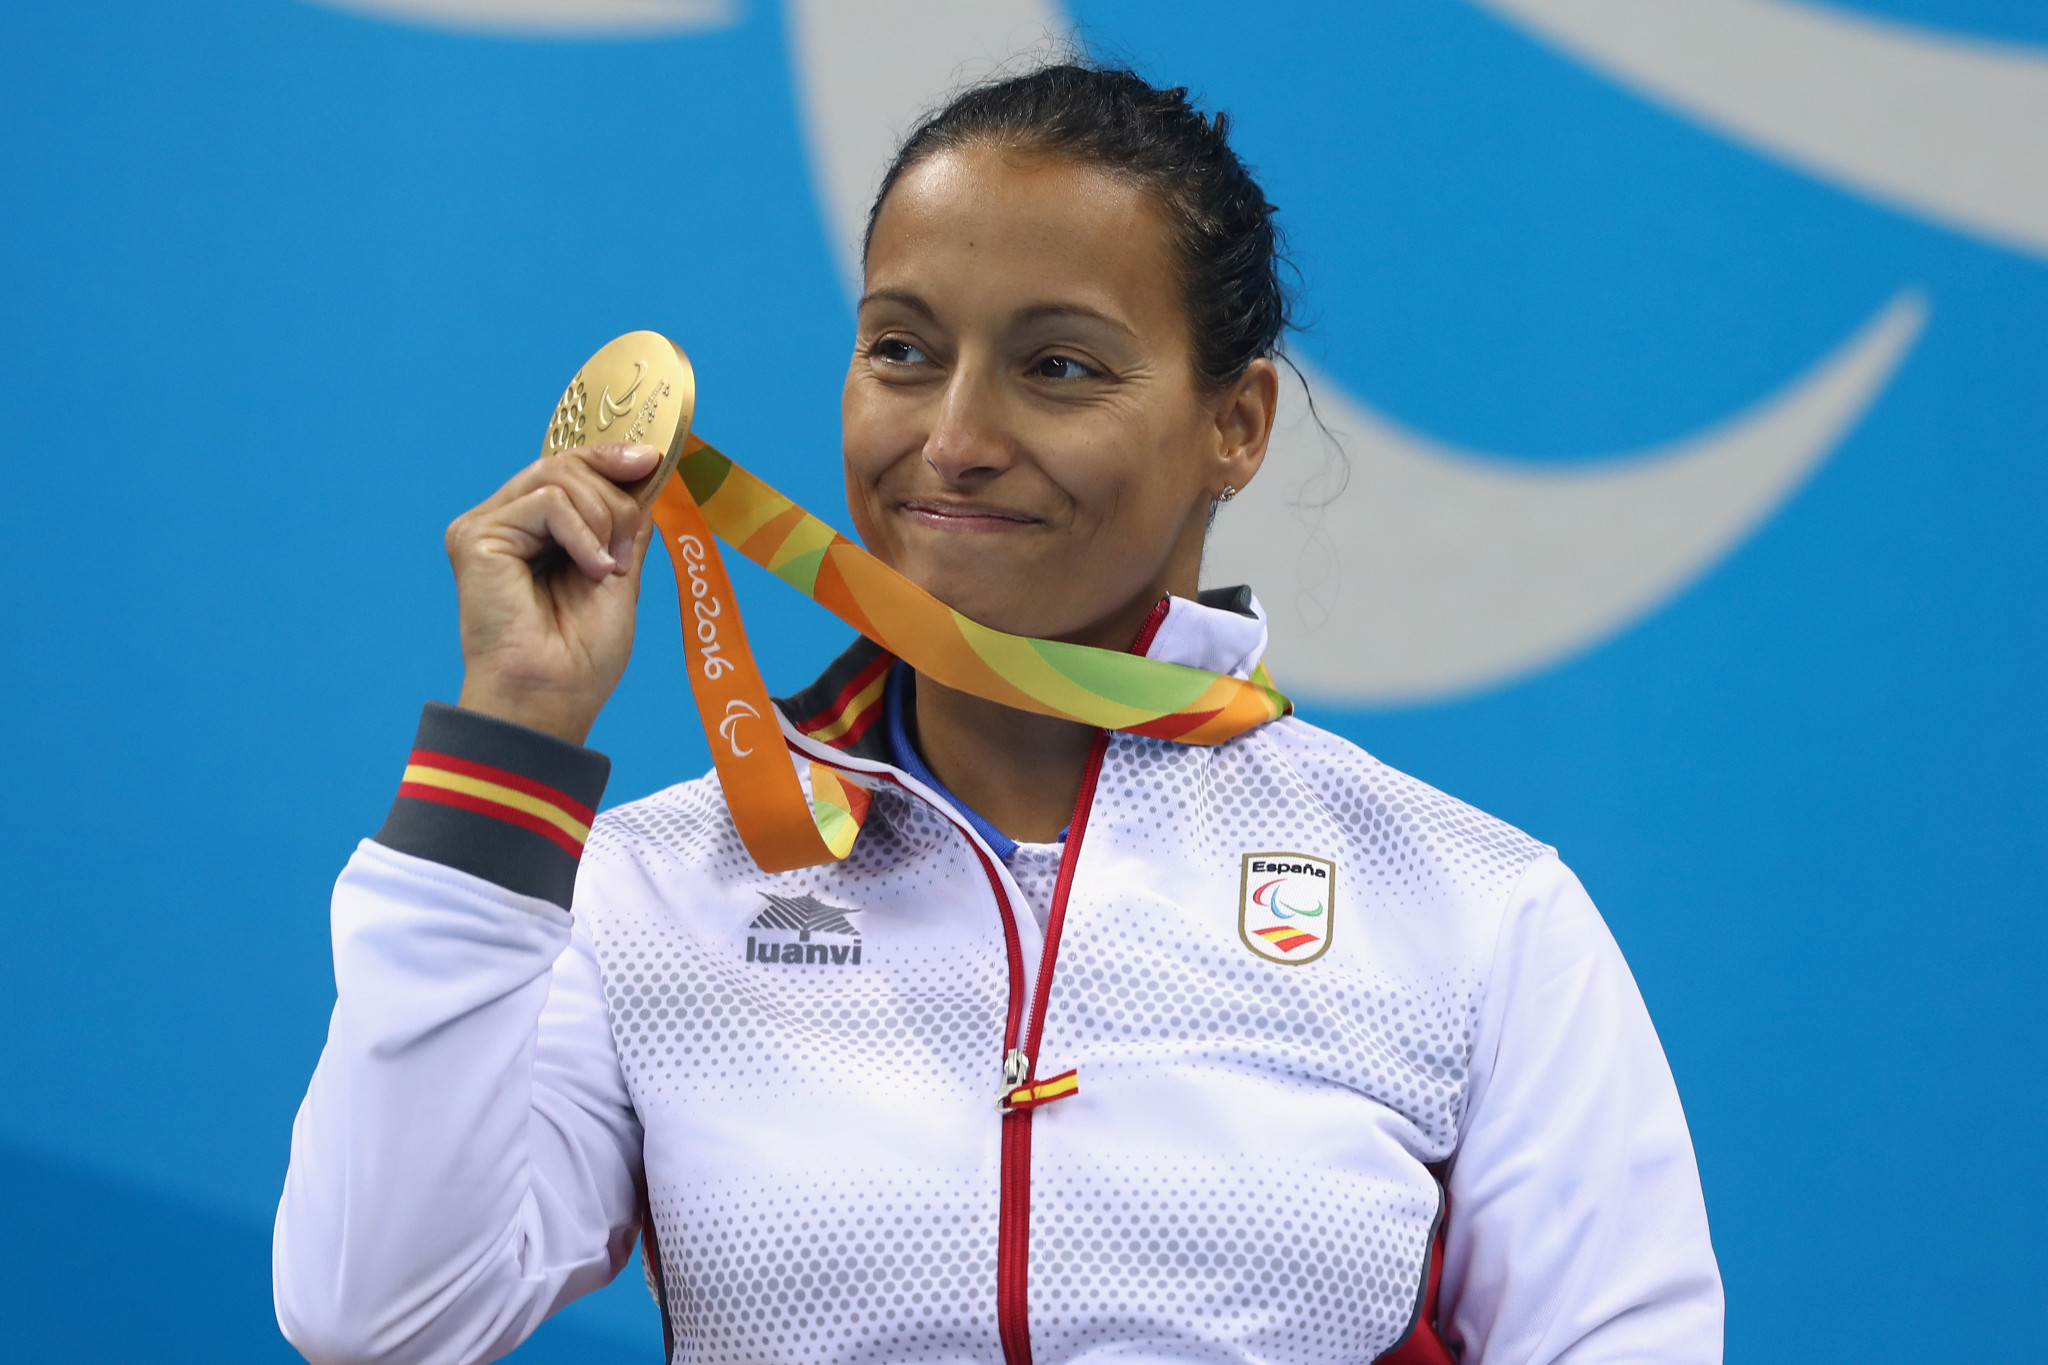 Theresa Peralus es la atleta paralímpica más condecorada de España, apareciendo en los últimos cinco juegos y ganando 26 medallas © Getty Images